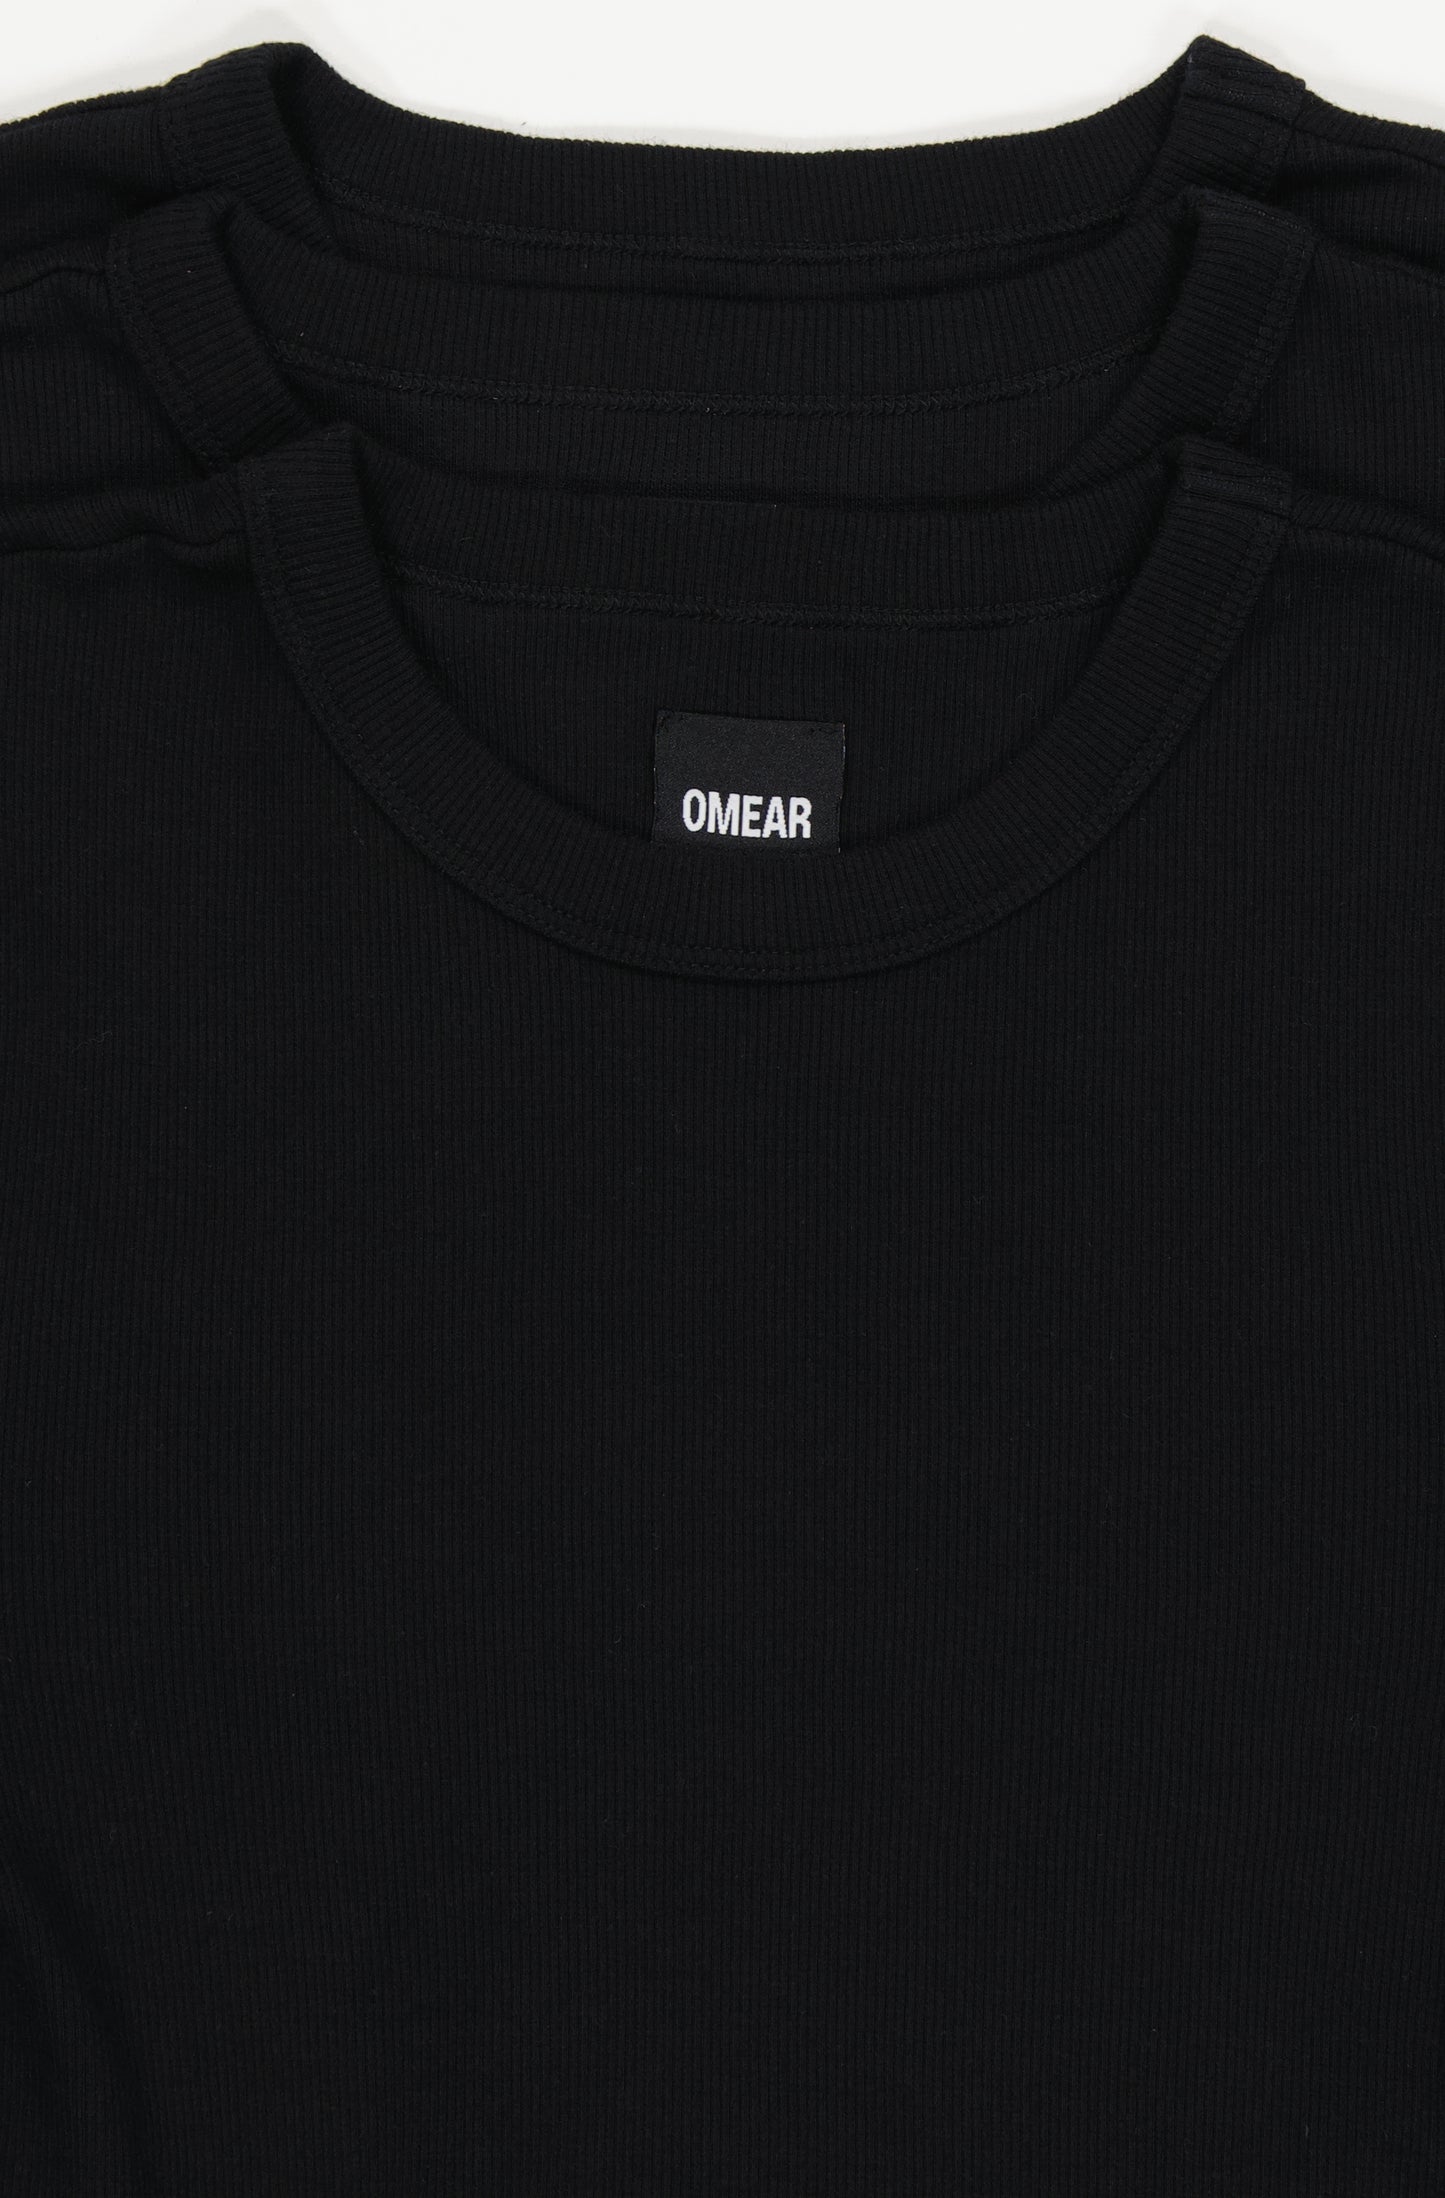 Le lot de 2 t-shirts à manches longues en coton côtelé bio pour femme OMEAR, en noir, vue détaillée de l'encolure doublée